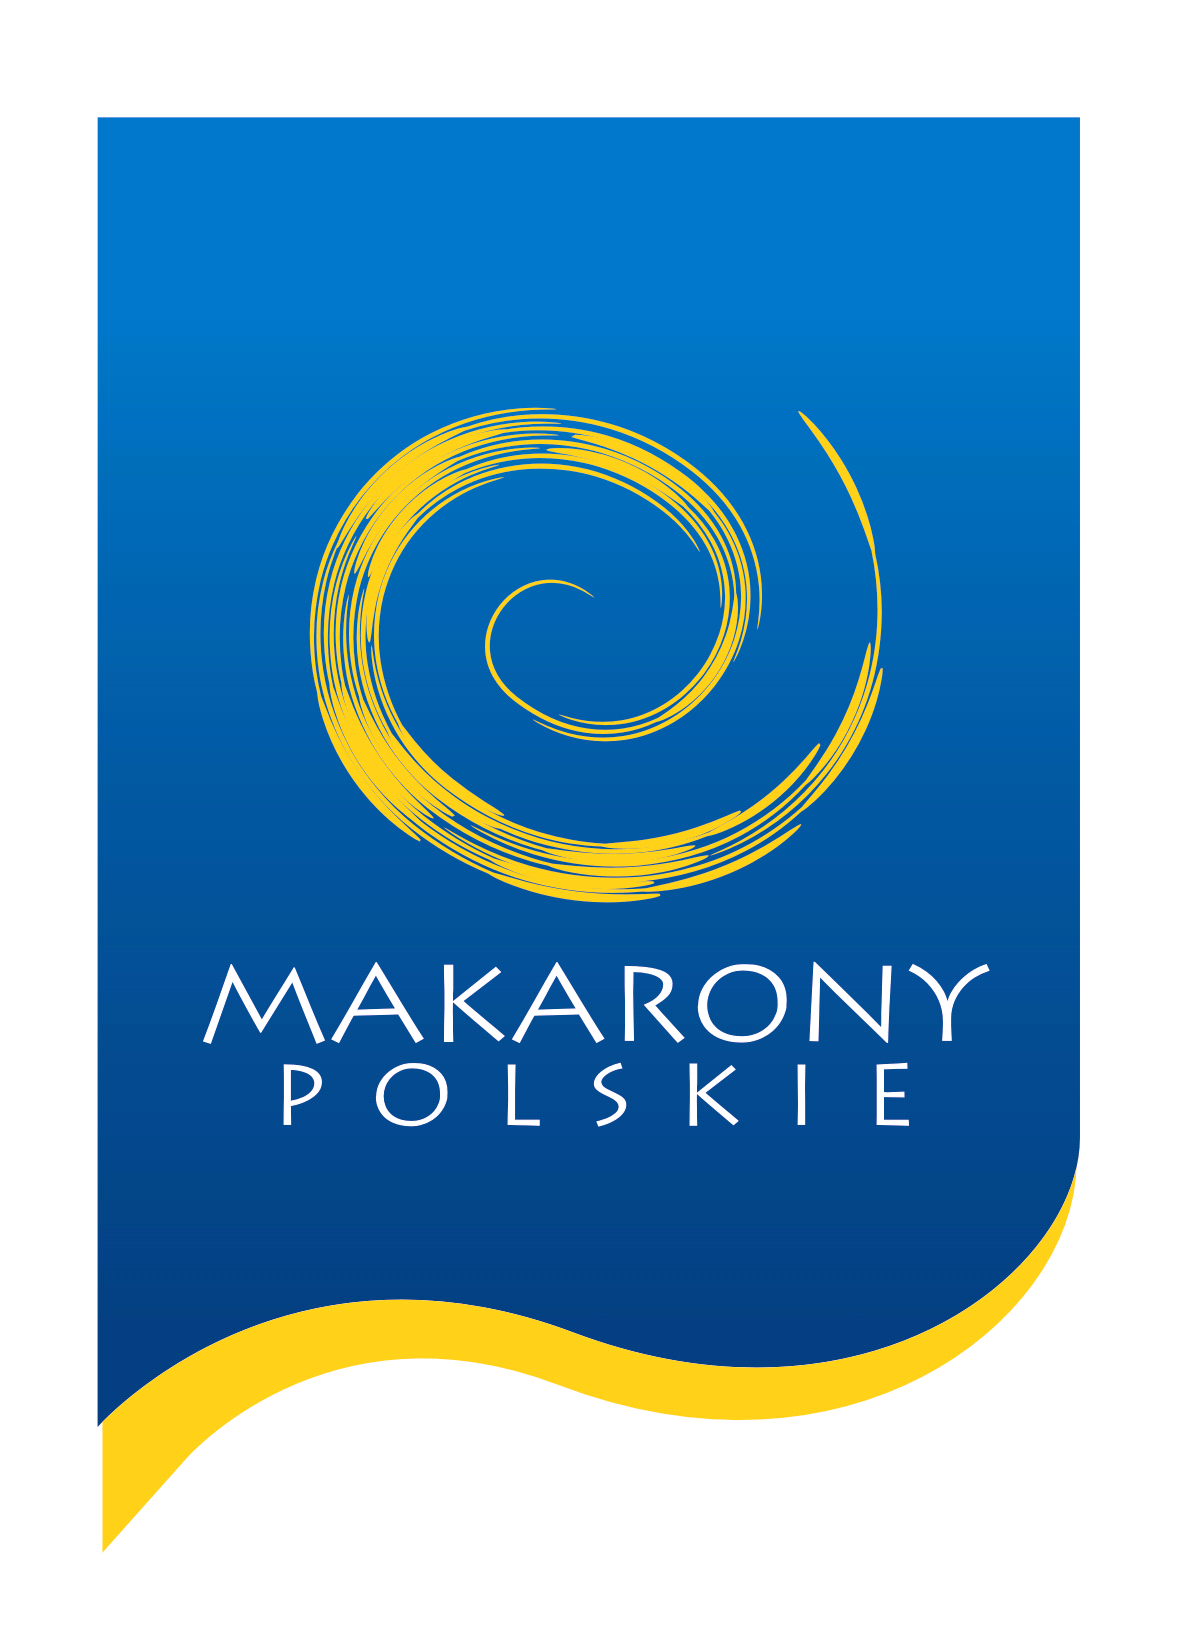 1) Charakterystyka Makarony Polskie S.A. Makarony Polskie Spółka Akcyjna z siedzibą w Rzeszowie przy ul. Podkarpackiej 15 jest jednostką dominującą Grupy Kapitałowej Makarony Polskie.